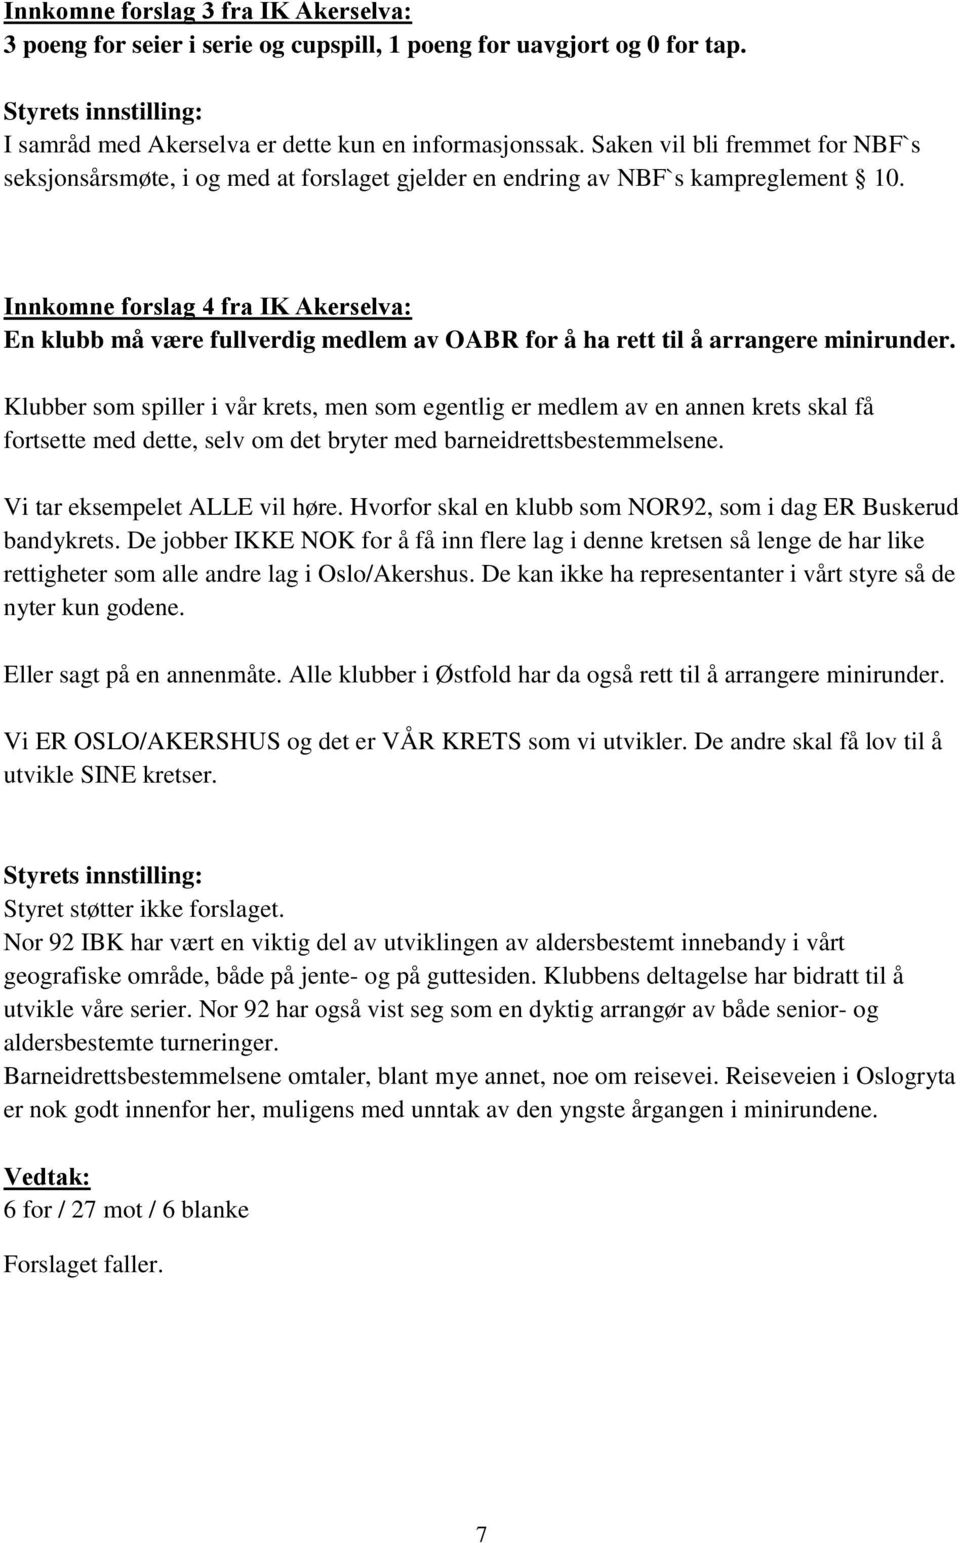 Innkomne forslag 4 fra IK Akerselva: En klubb må være fullverdig medlem av OABR for å ha rett til å arrangere minirunder.